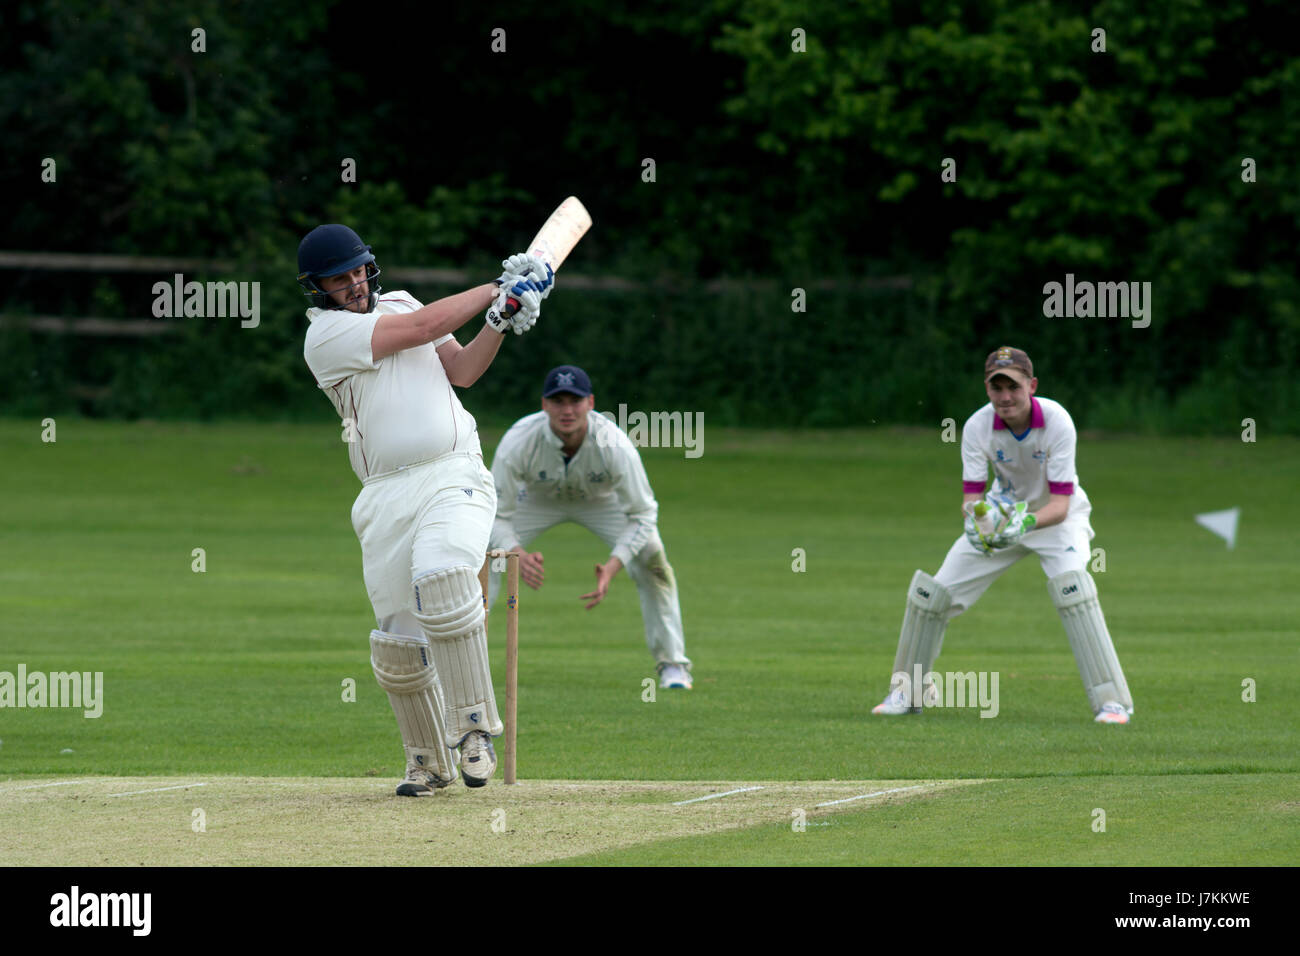 Le sport universitaire, UK - men's cricket Banque D'Images